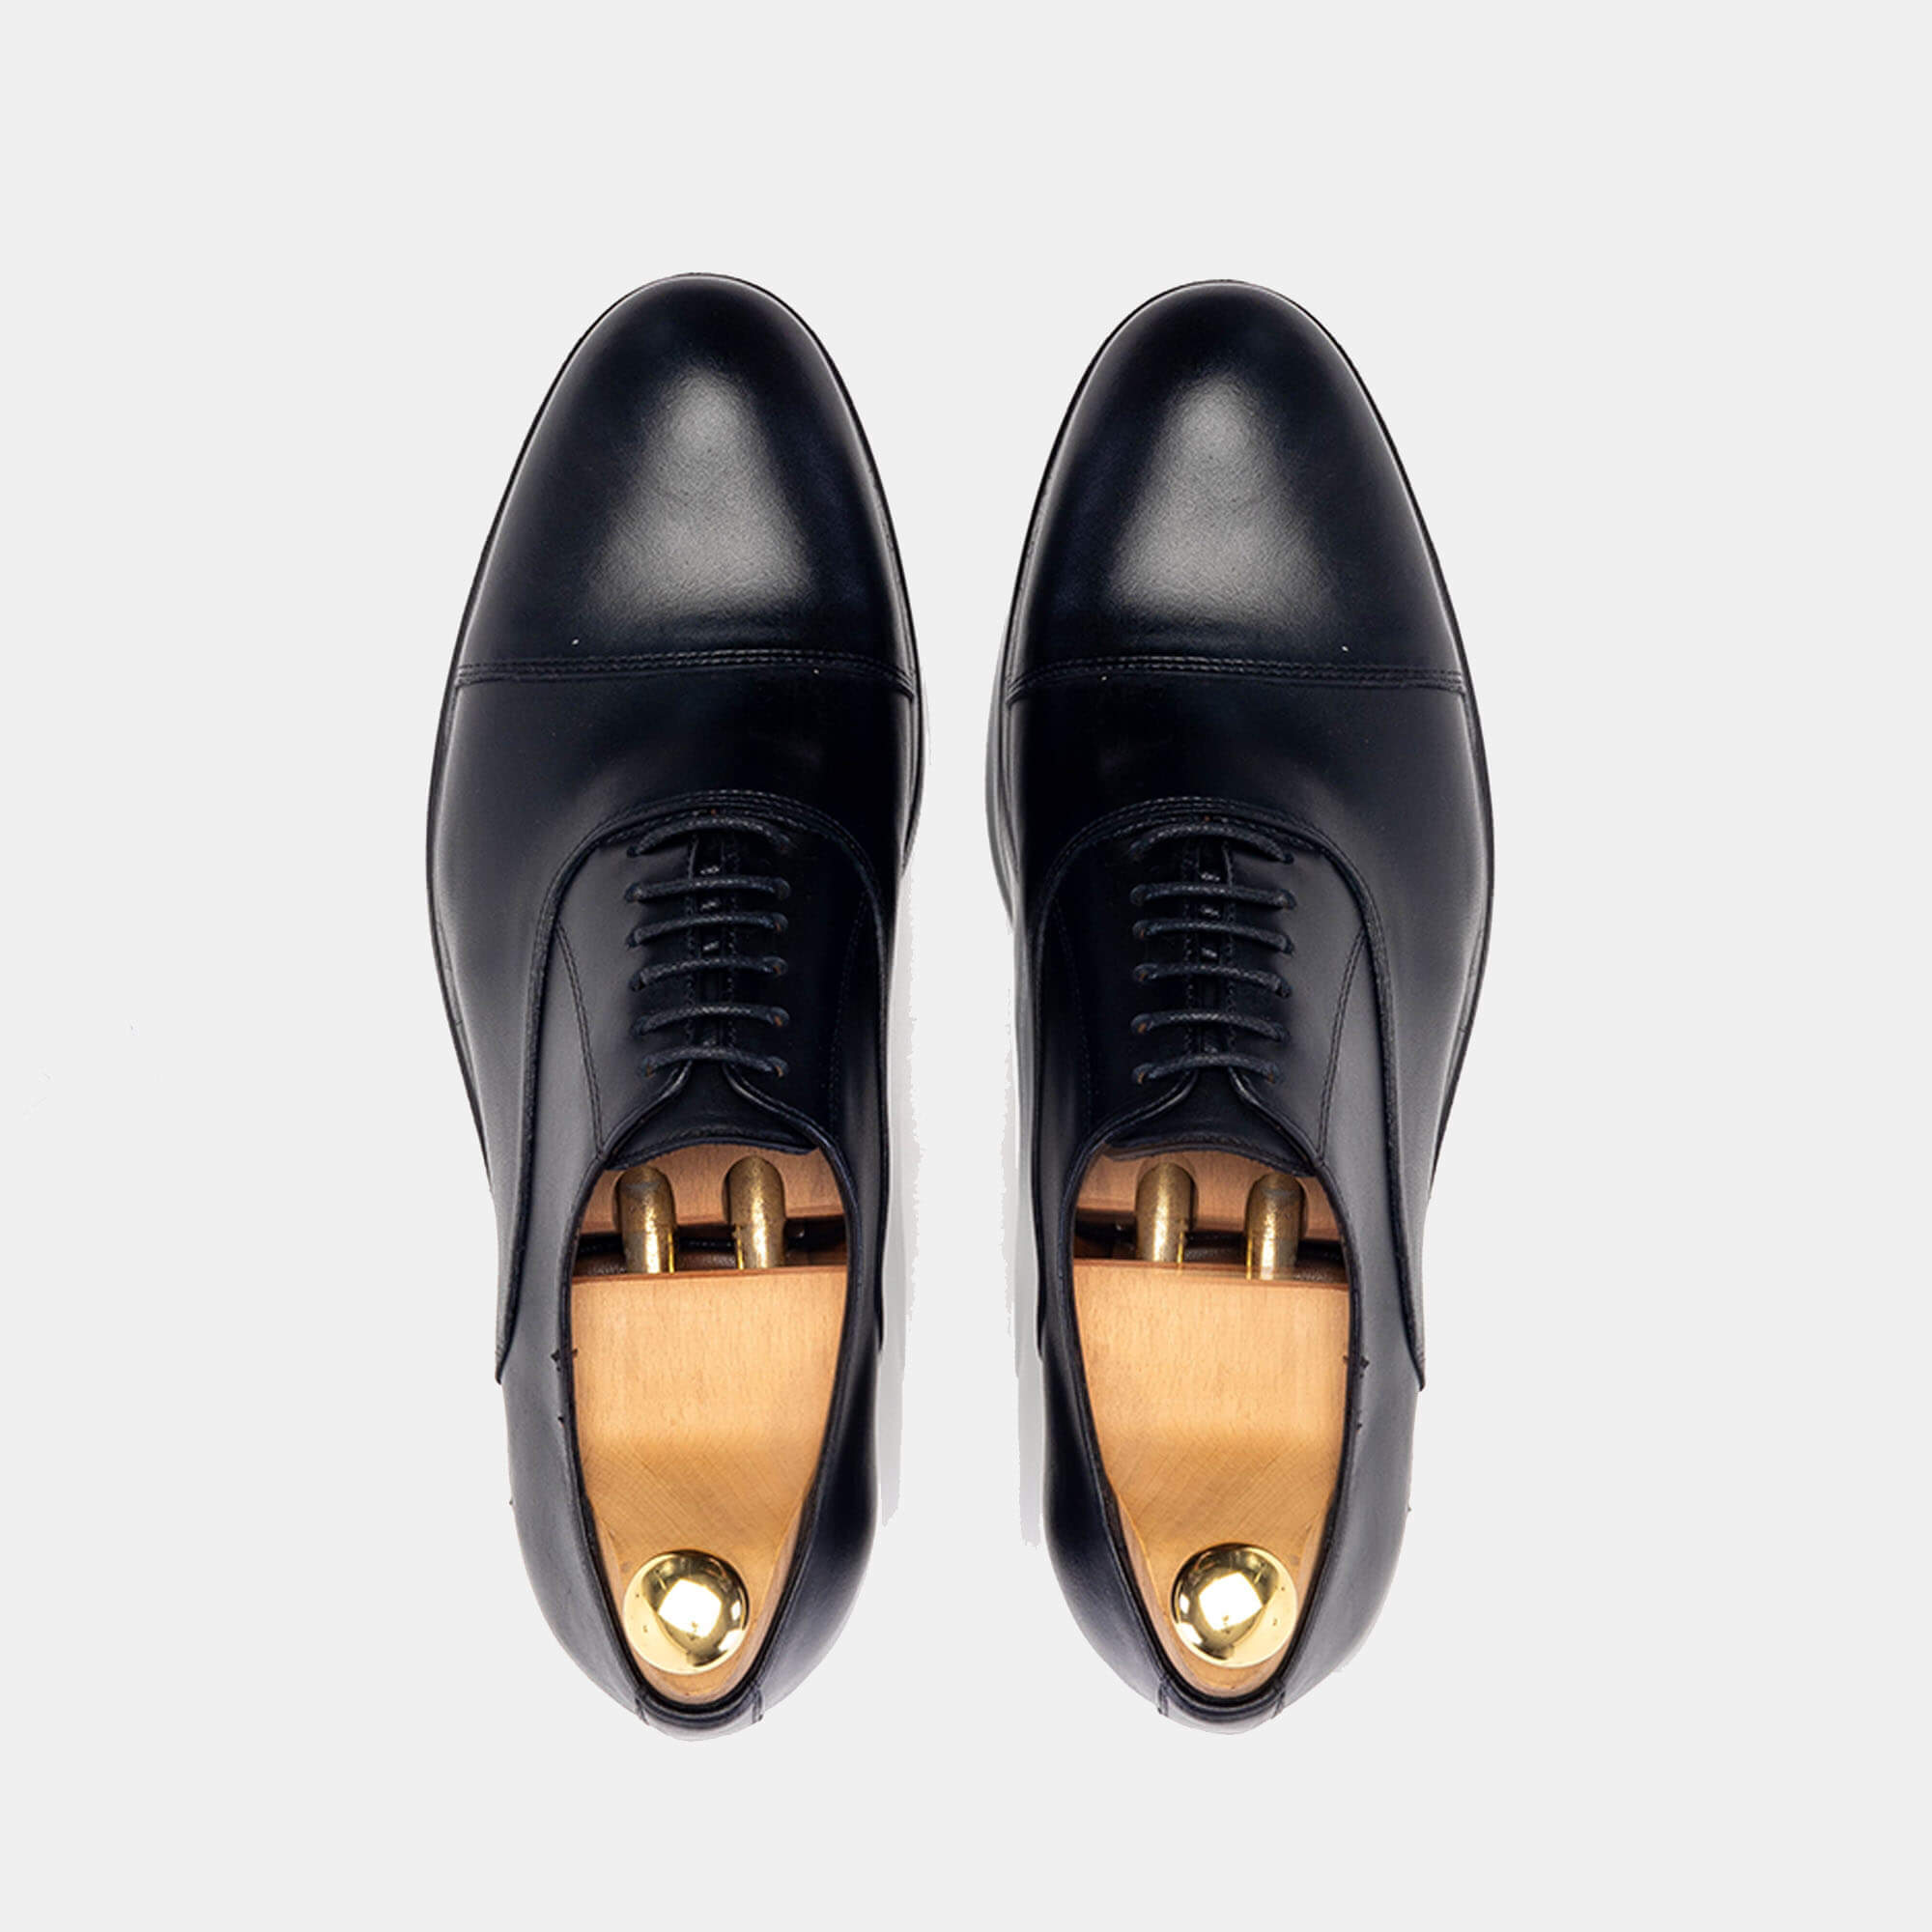 '5129 Chaussure cuir Noir